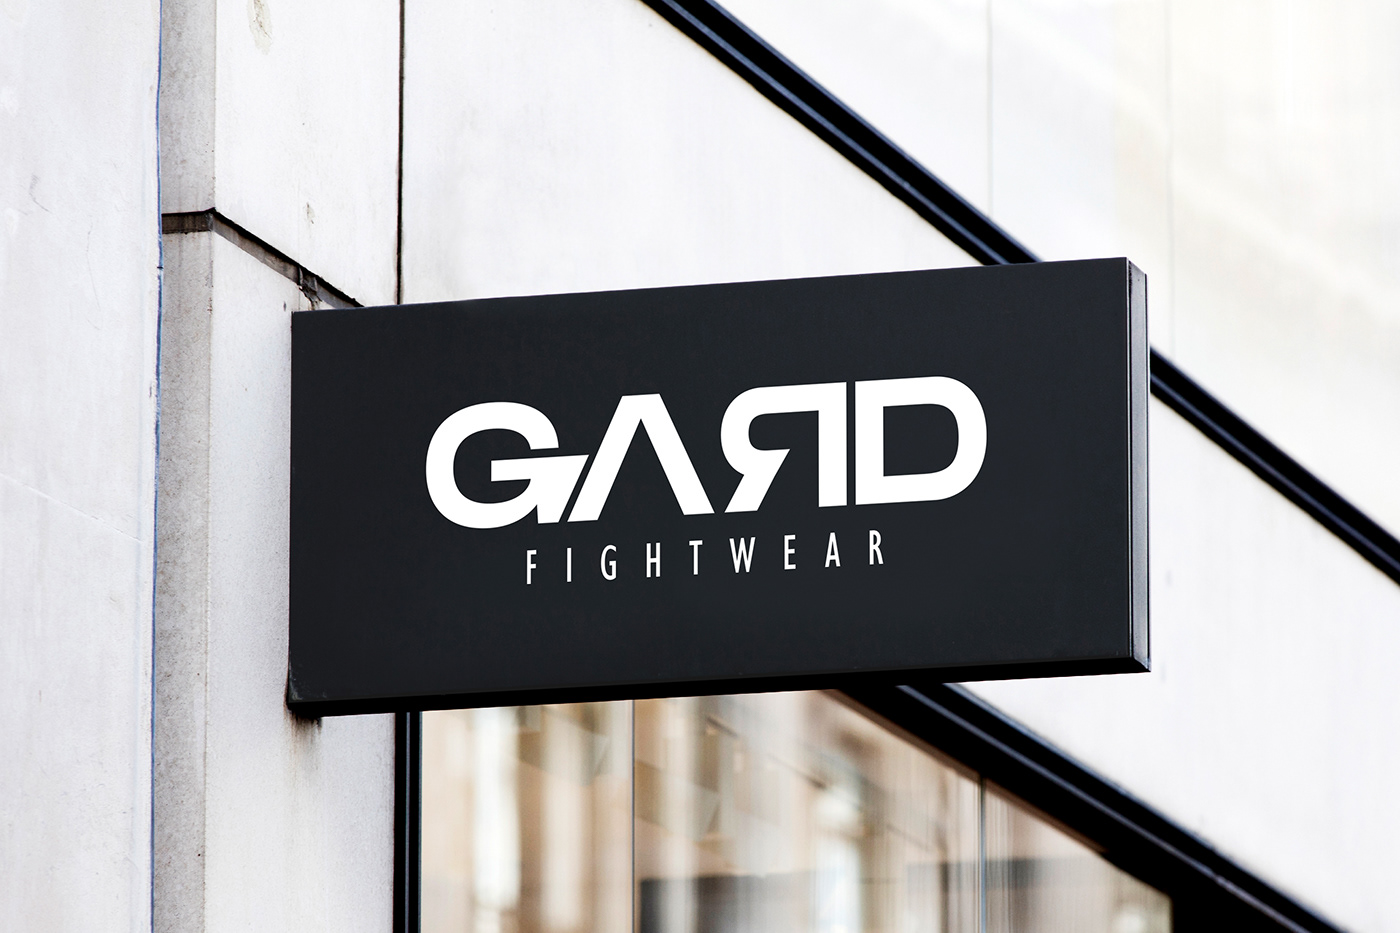 fightwear Sportswear UFC Sports Design Boxing gym workout brand identity Graphic Designer mma design